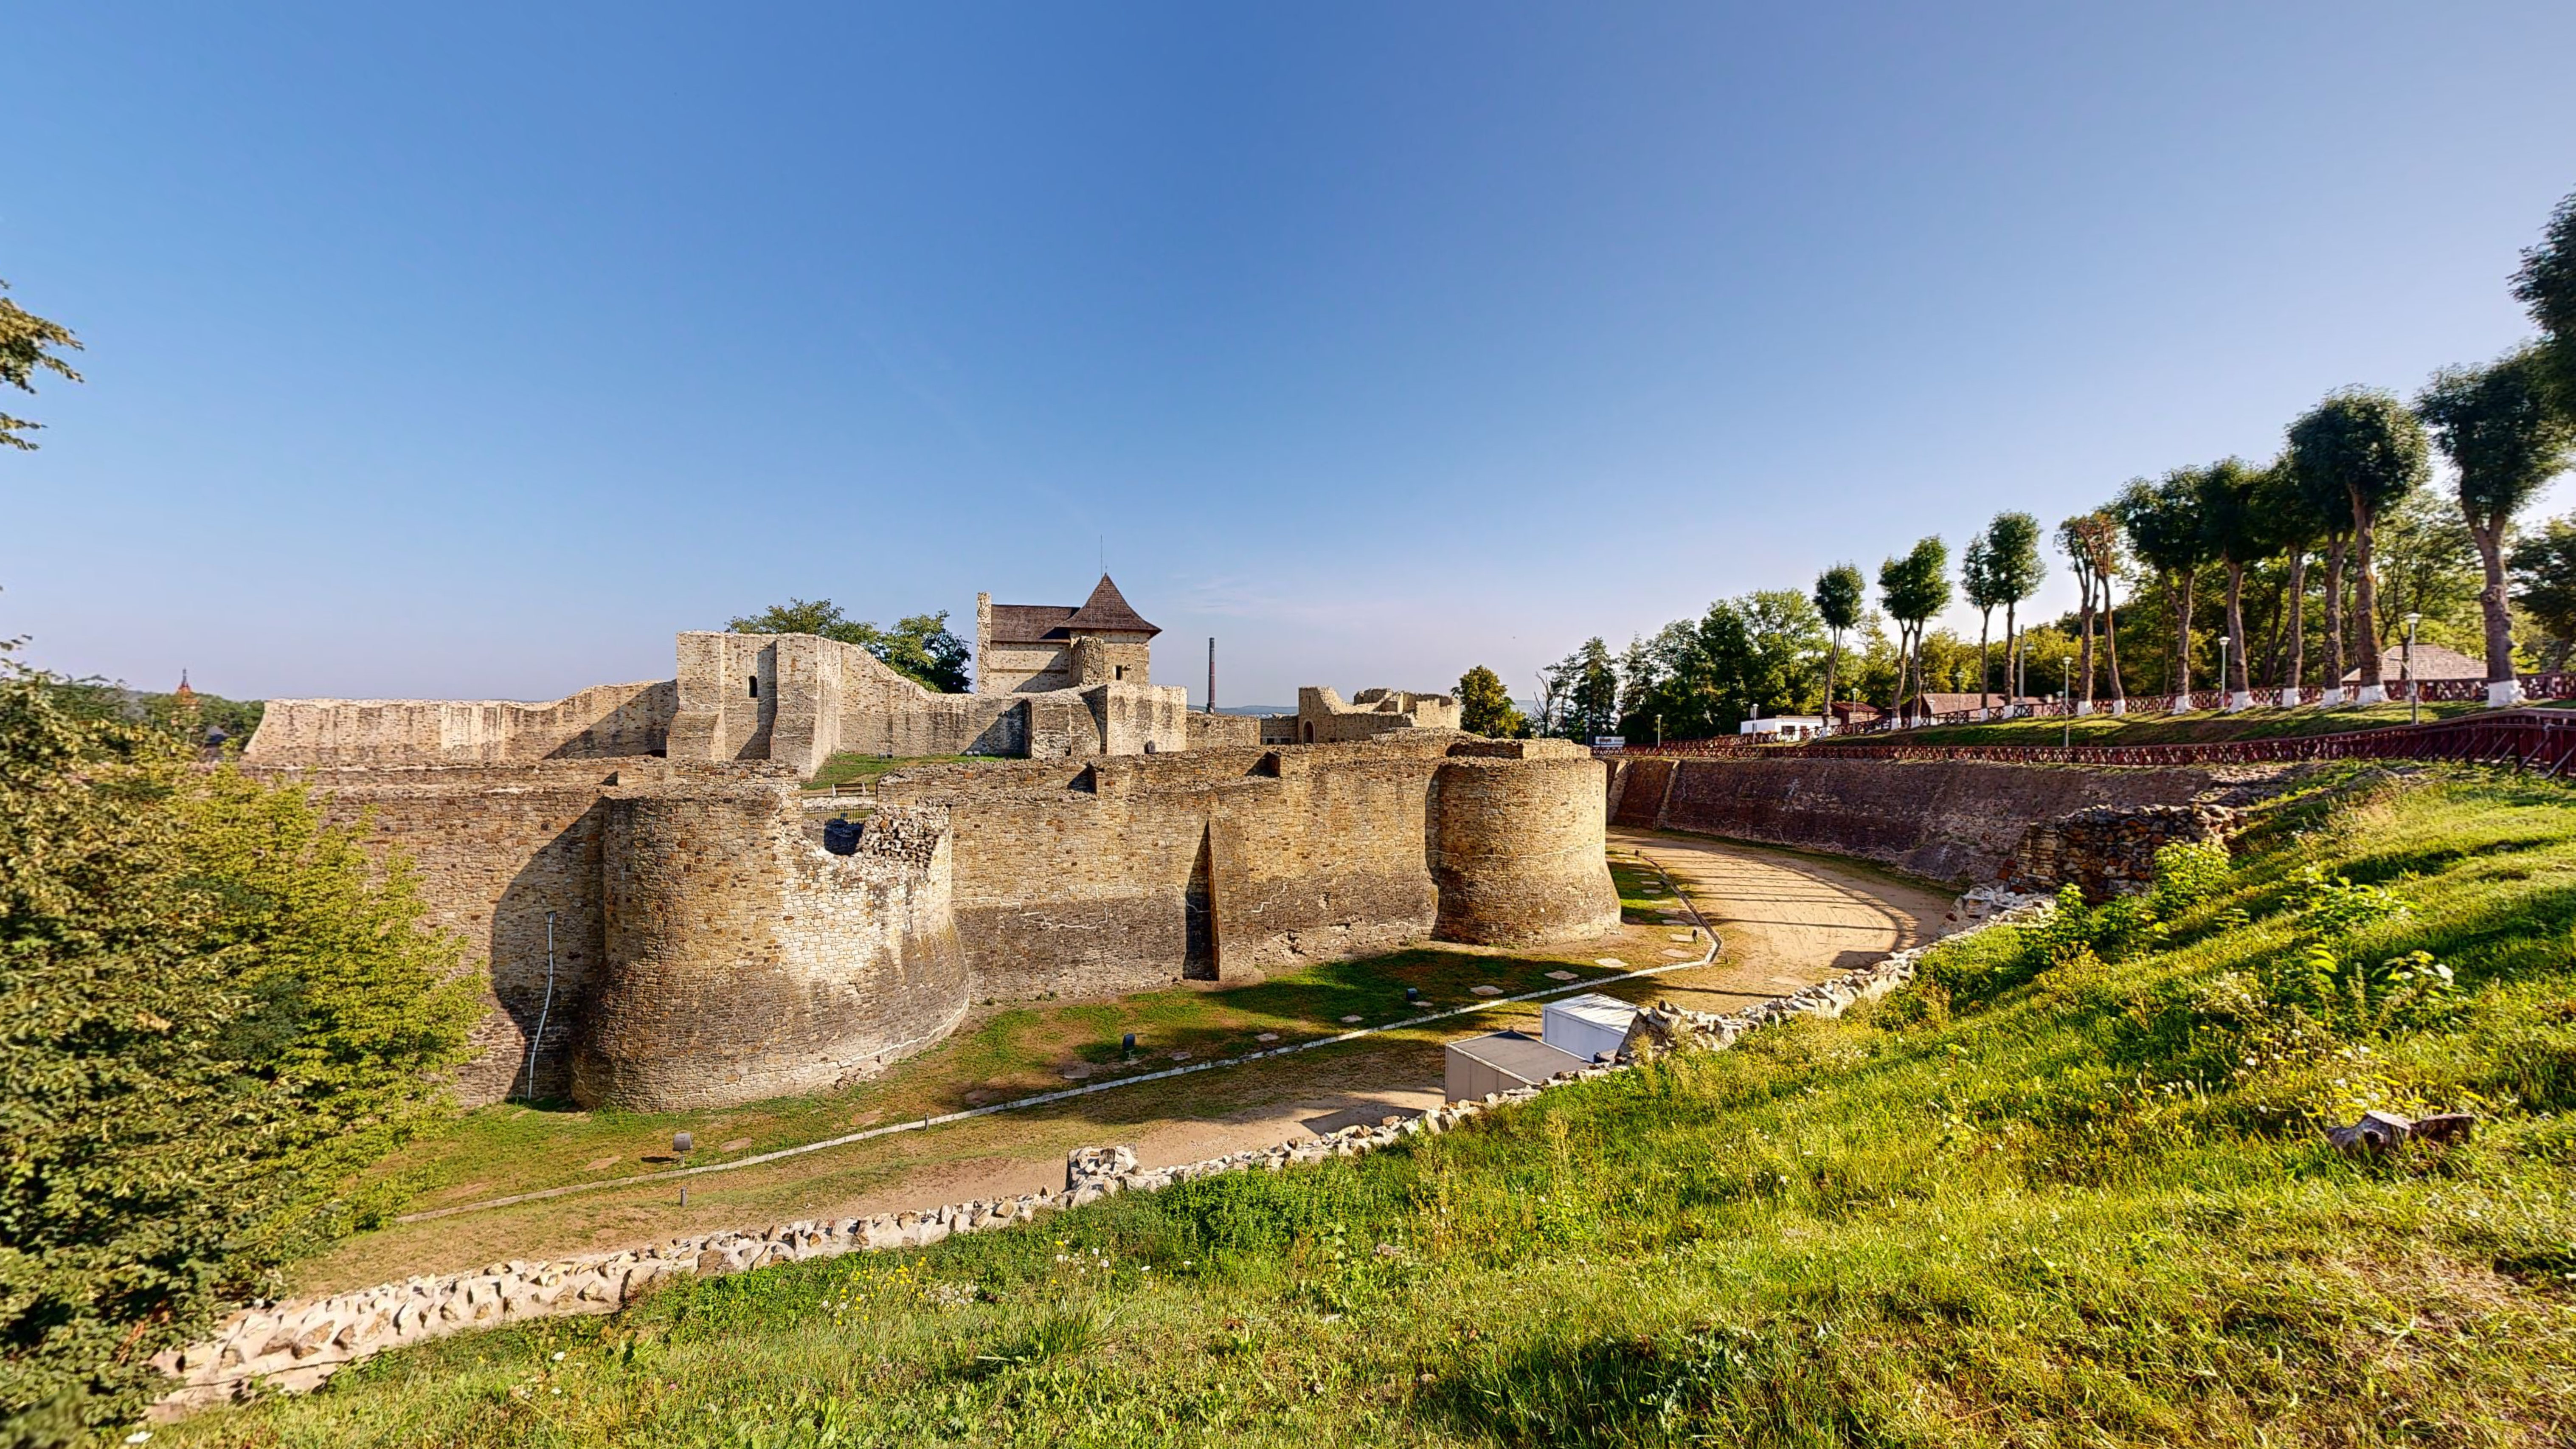 Cetatea-de-Scaun-a-Sucevei-10312023_154052